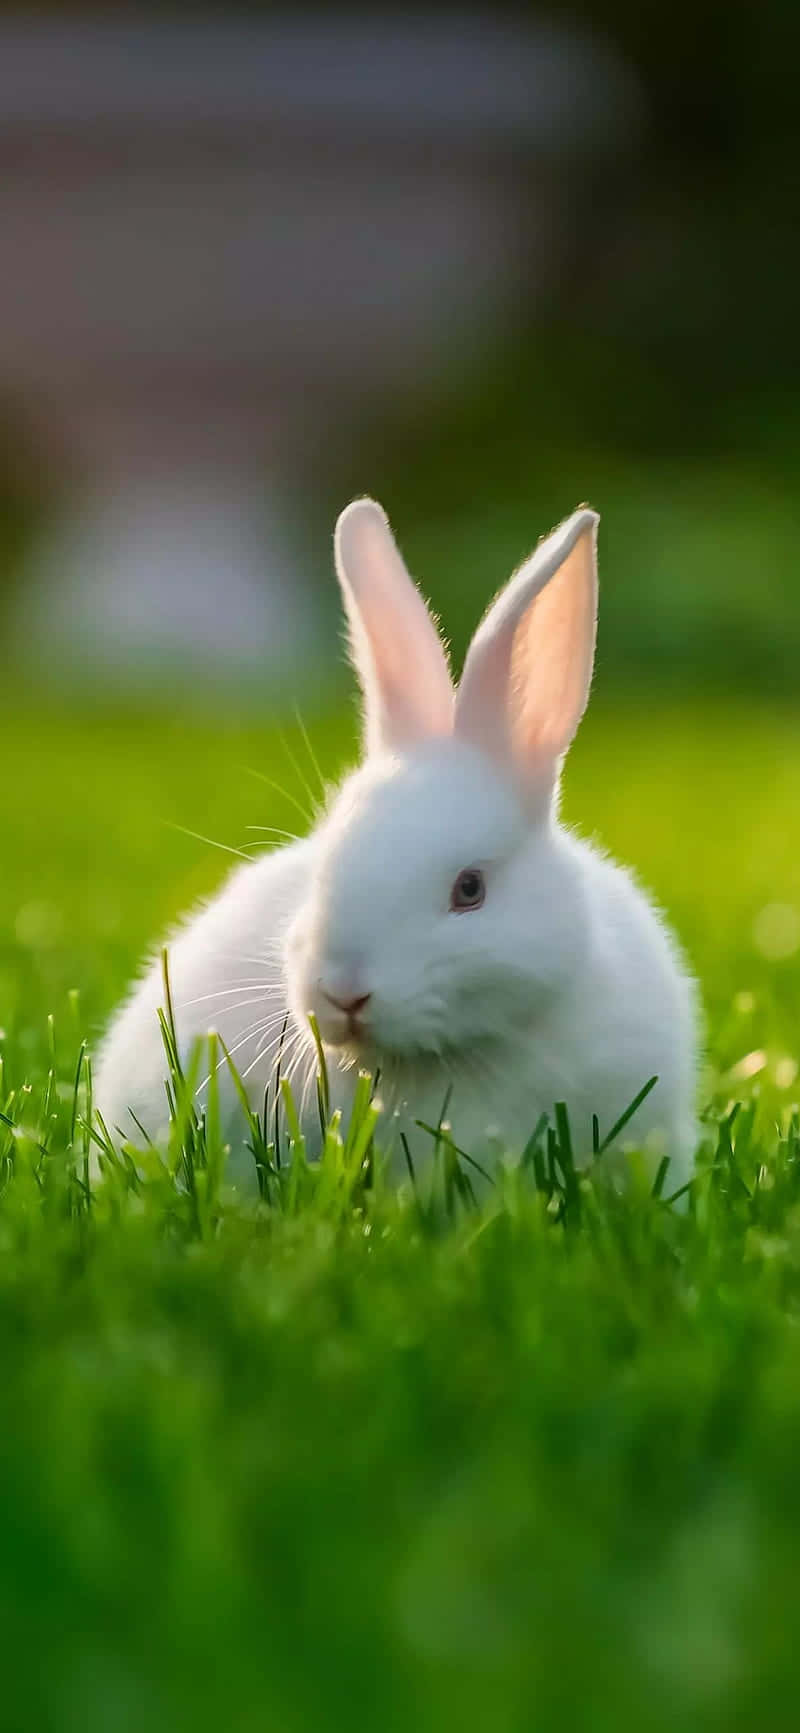 Nyd denne søde kanin med din iPhone Wallpaper